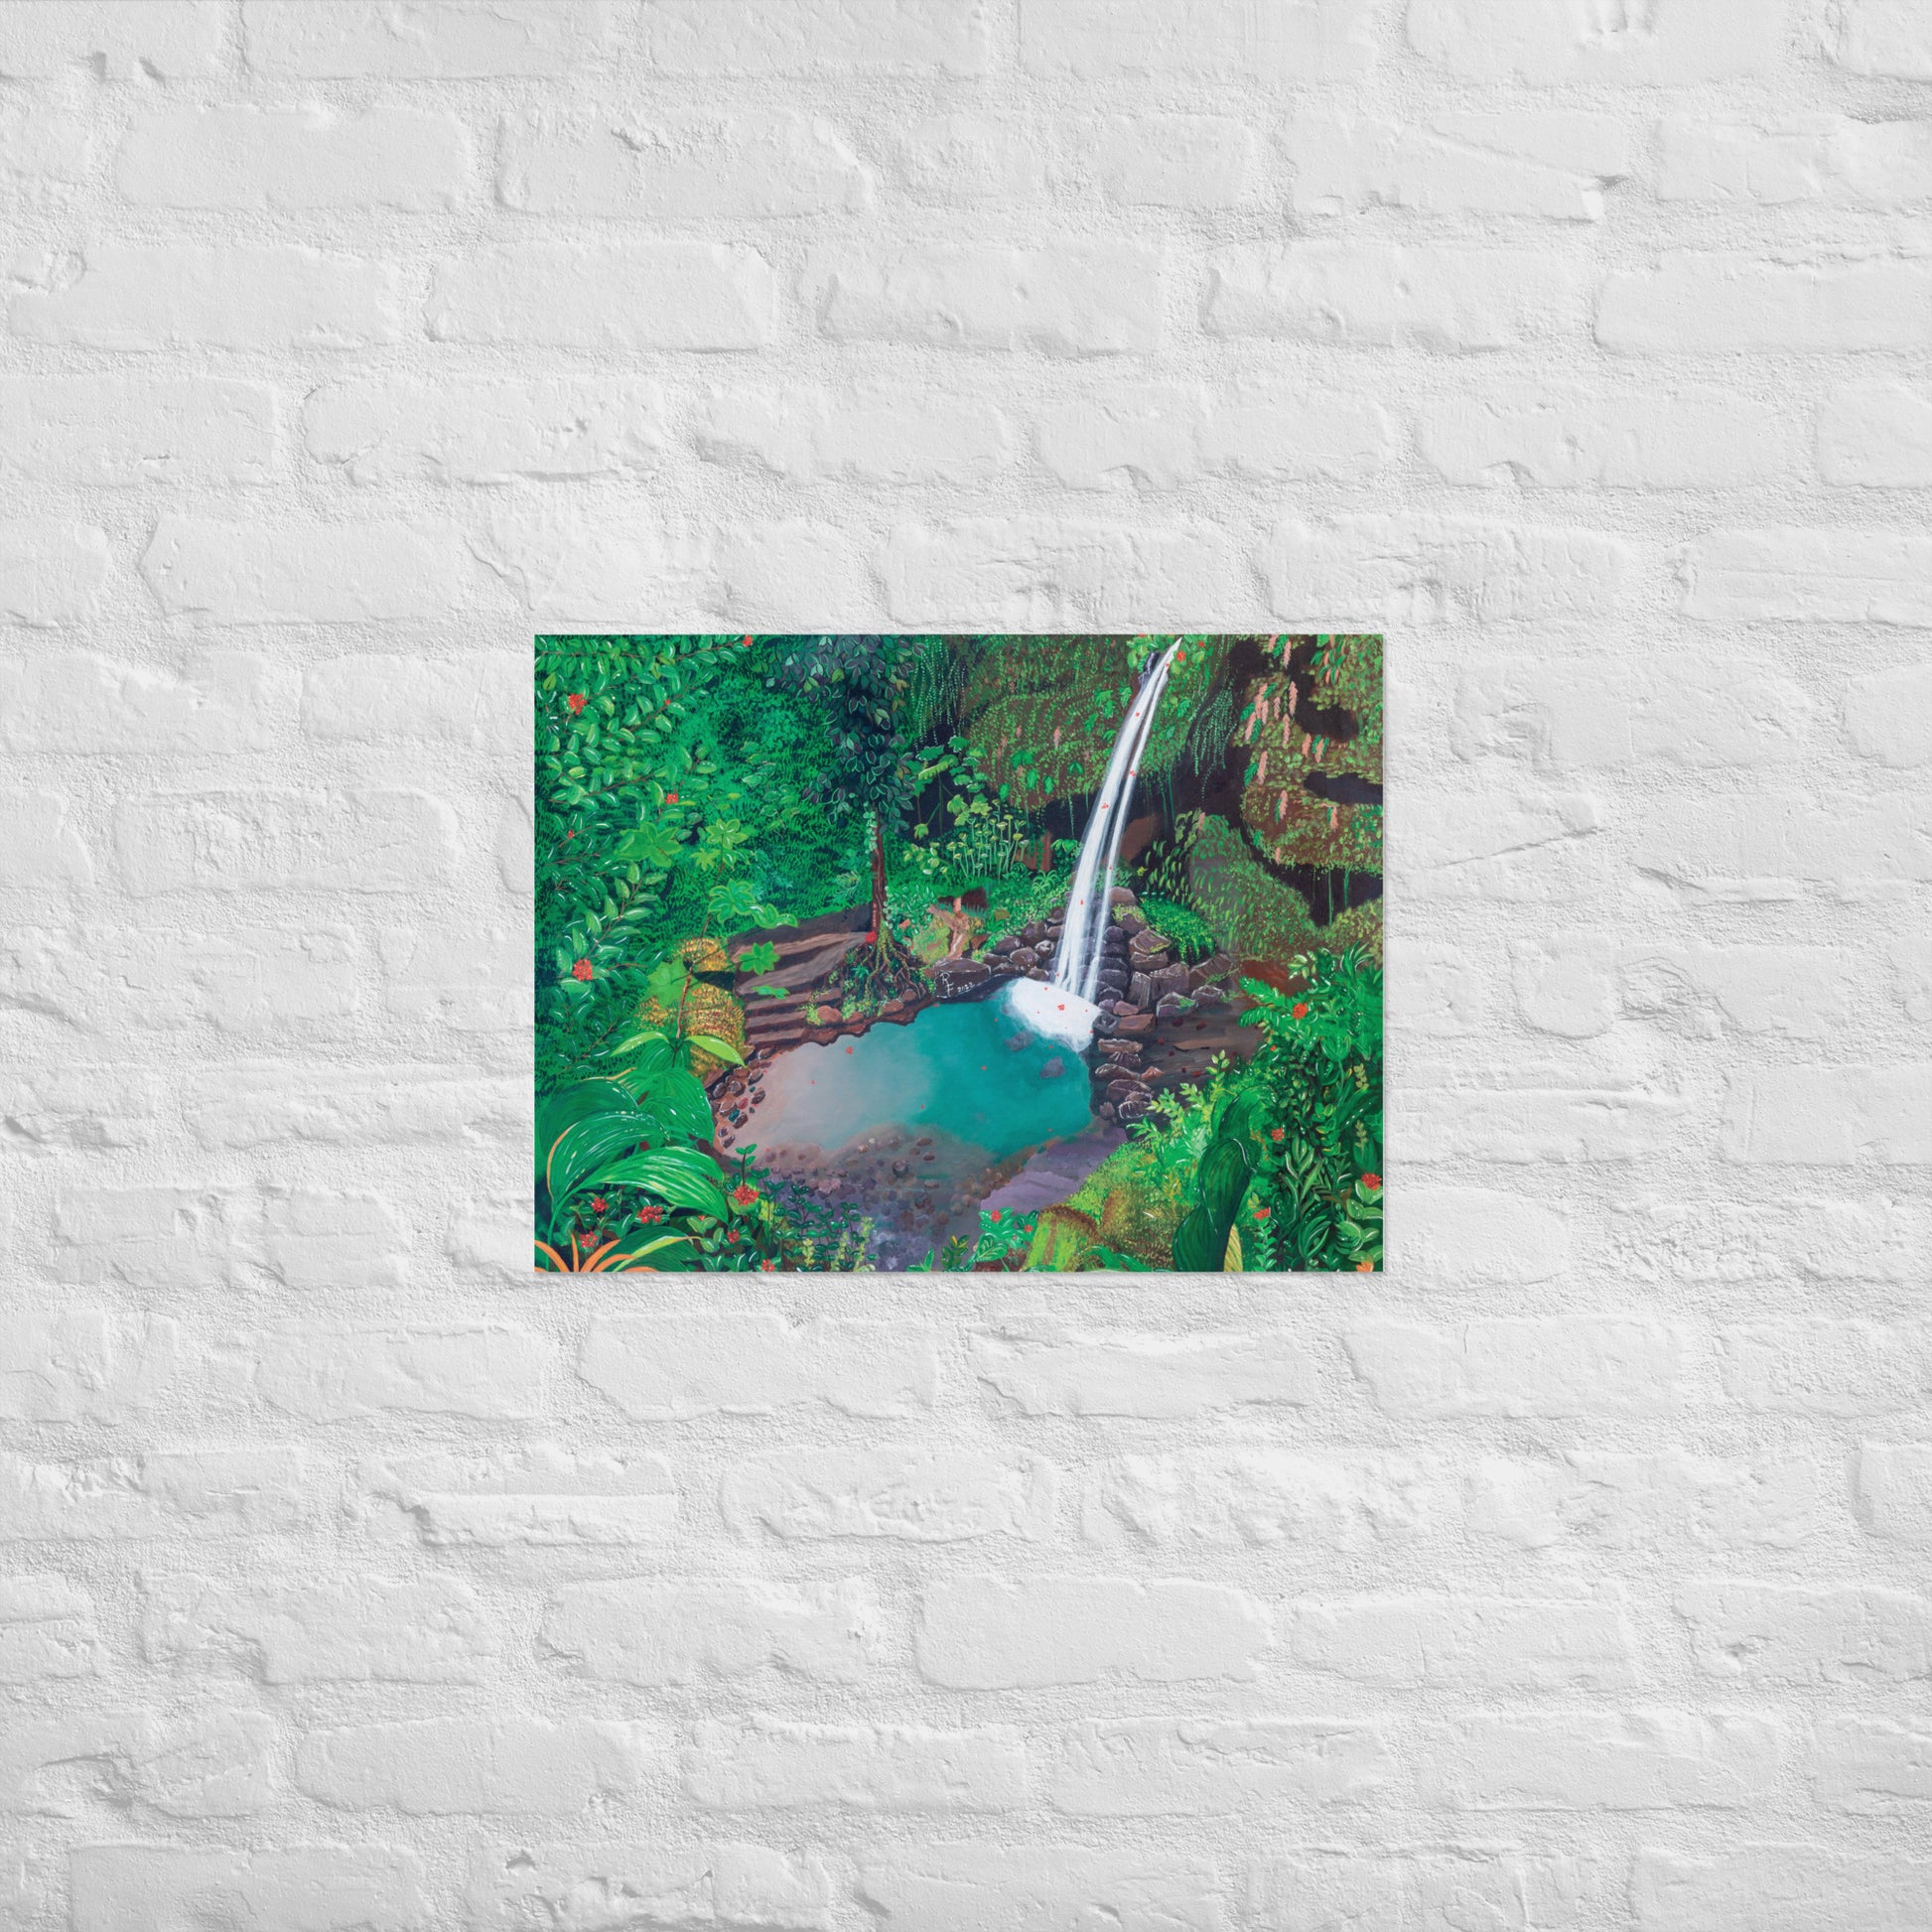 Emerald Pool Art Prints | Emerald Pool Art | ReiCreations Art